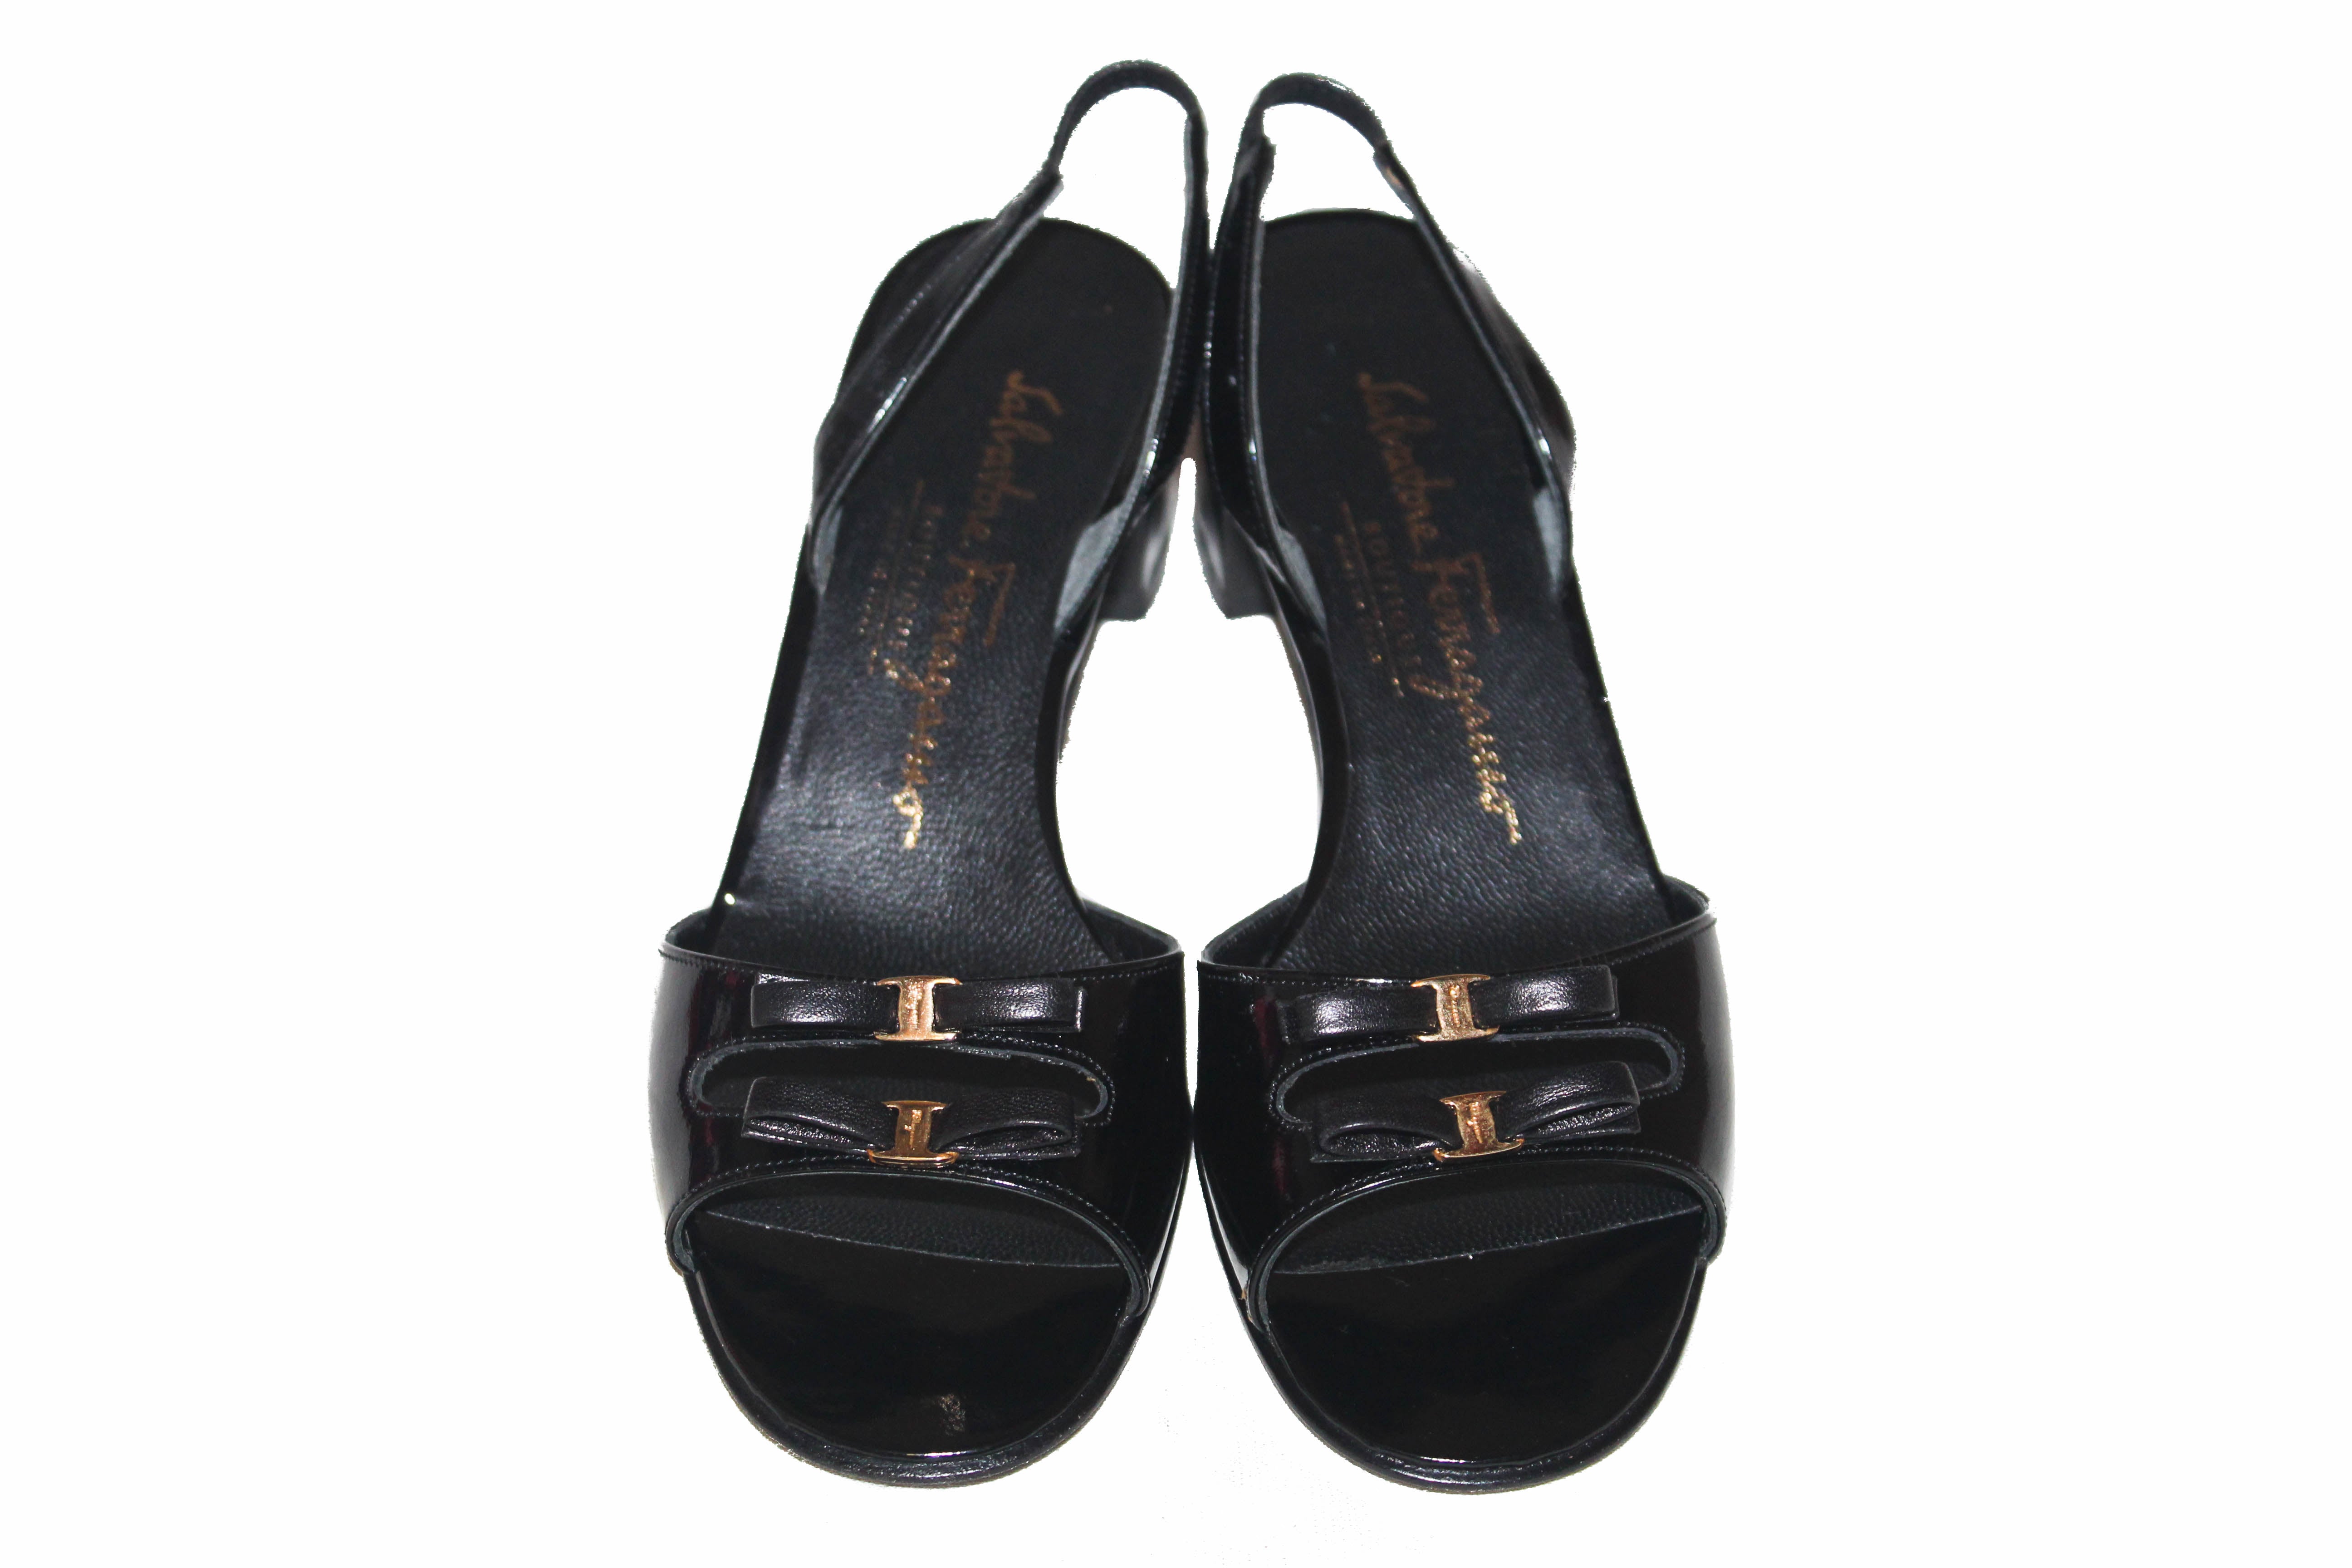 Authentic Salvatore Ferragamo Boutique Black Patent Leather Bow Slingback Sandal 5.5 B